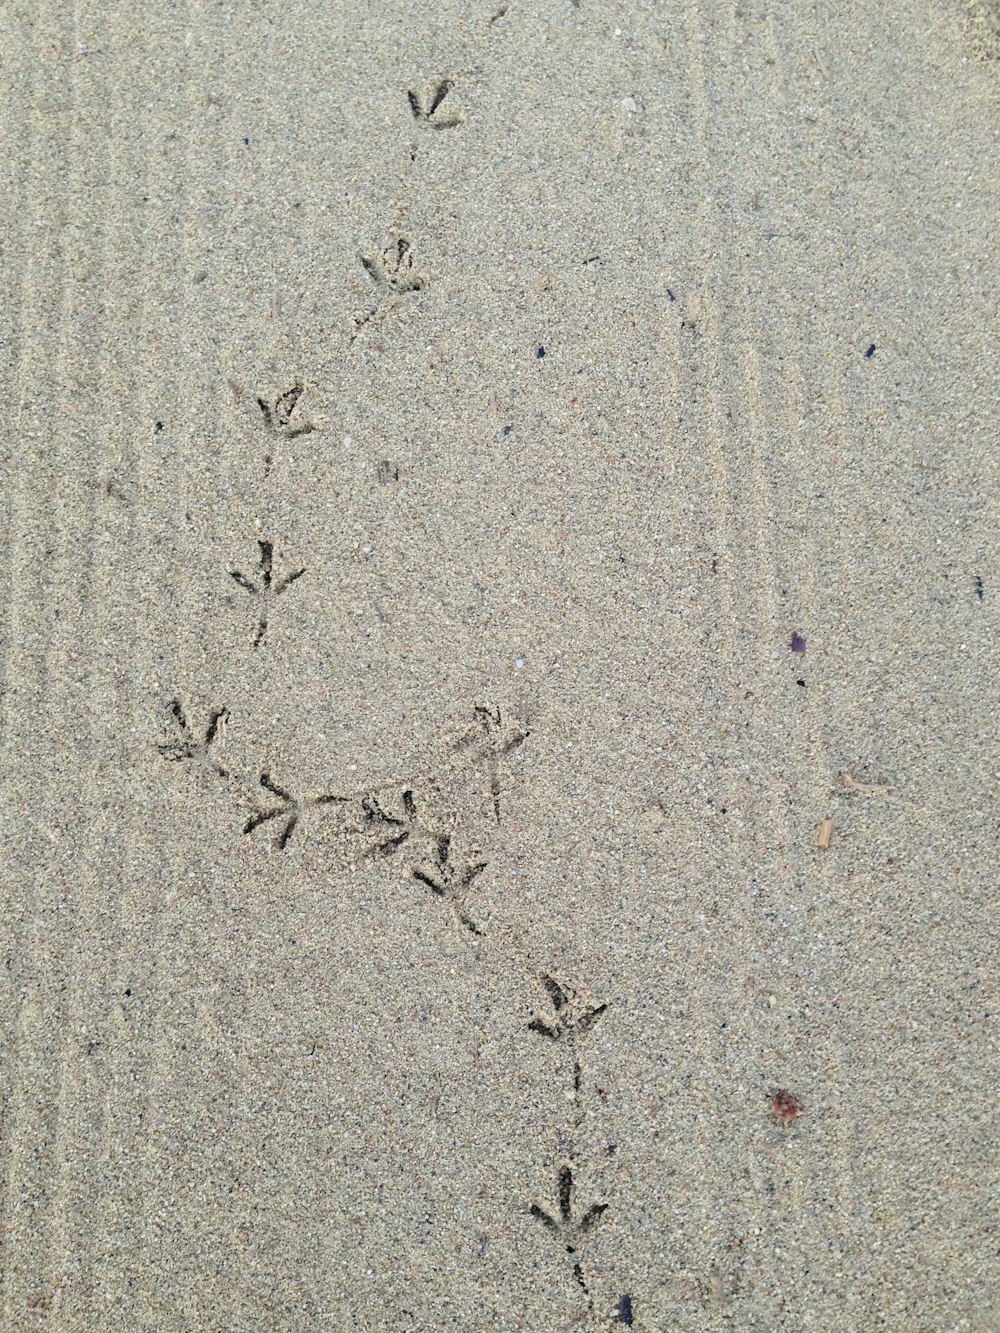 Un'immagine delle impronte di un uccello nella sabbia